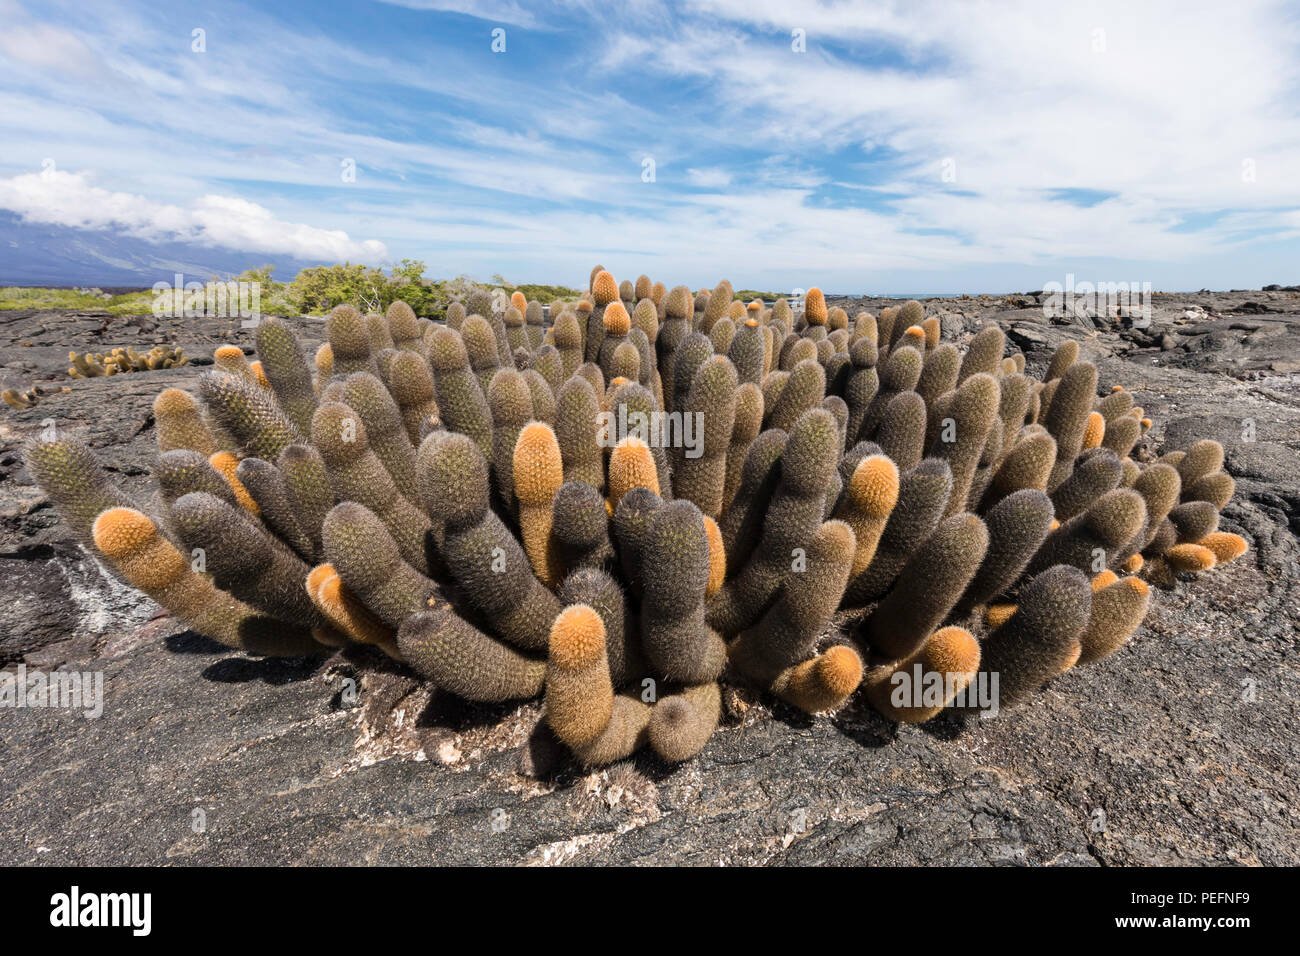 Cactus Brachycereus lave endémique, spp, l'île de Fernandina, Galapagos, Equateur. Banque D'Images